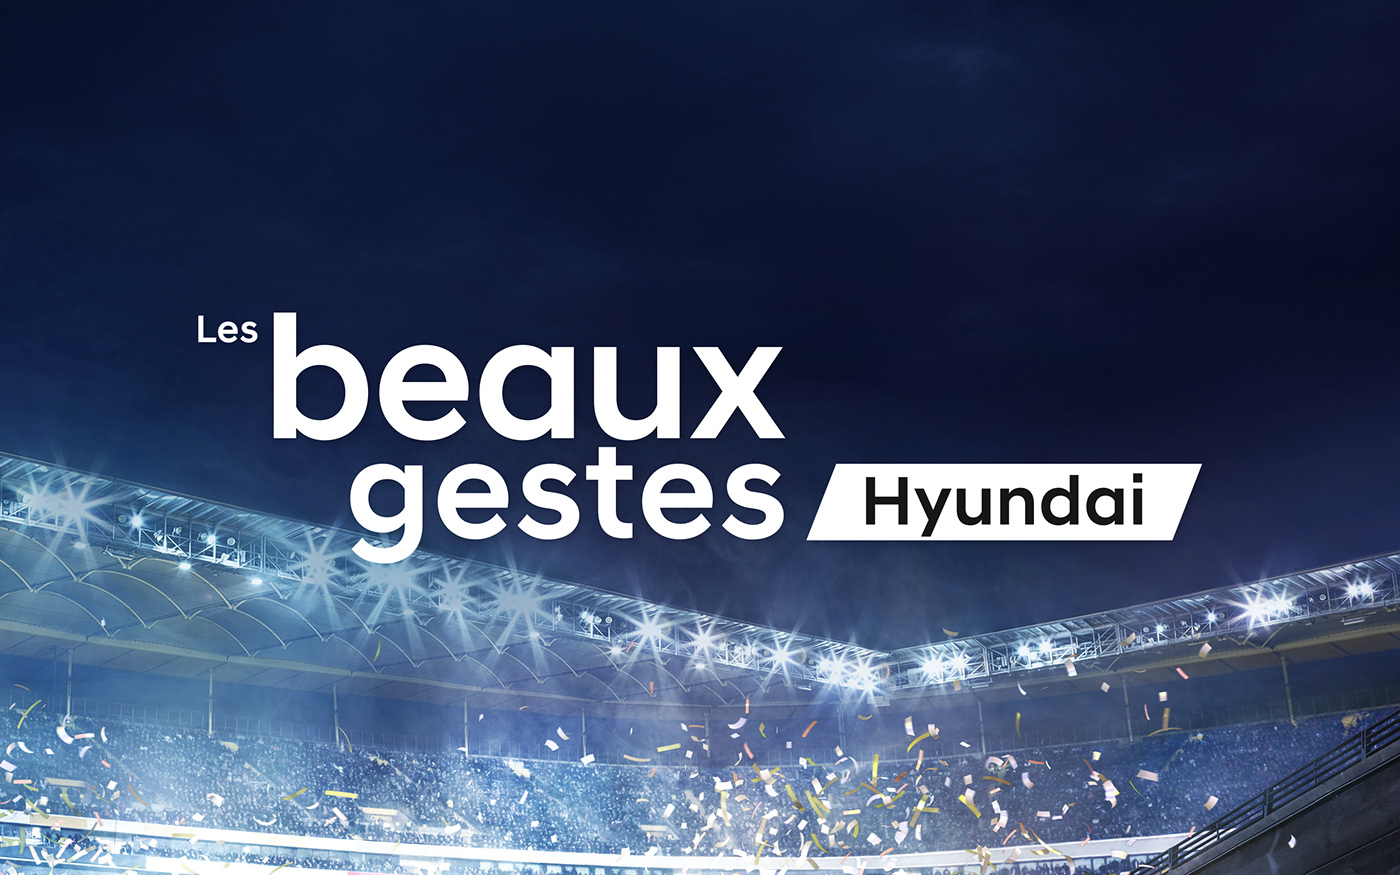 Hyundai Beaux Gestes fifa 2018 logo